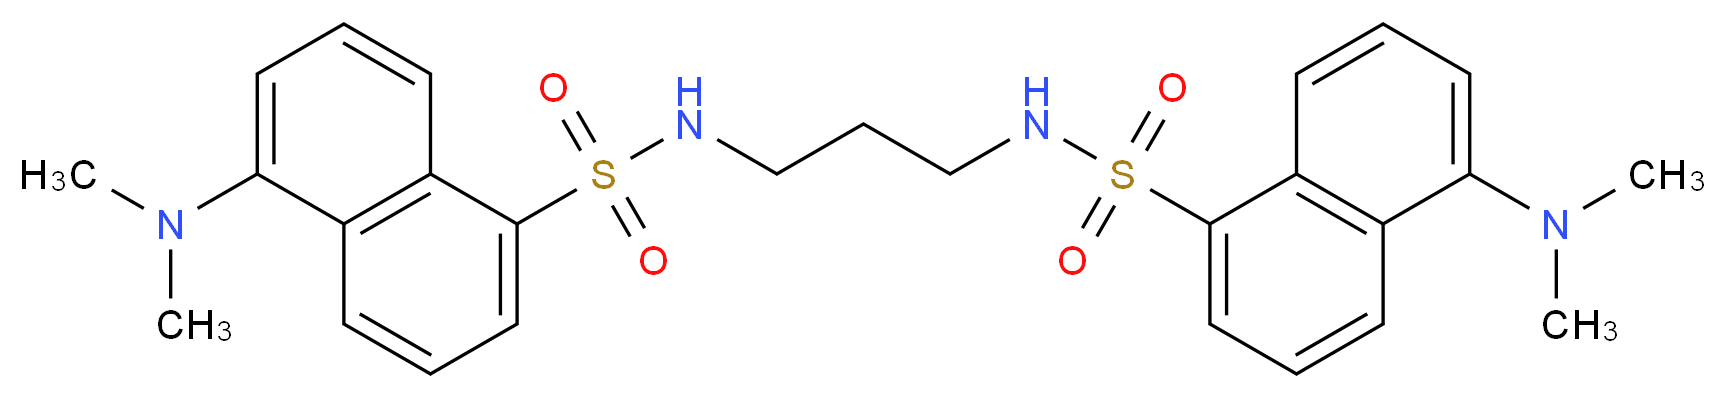 Didansyl-1,3-diaminopropane_Molecular_structure_CAS_64144-62-3)